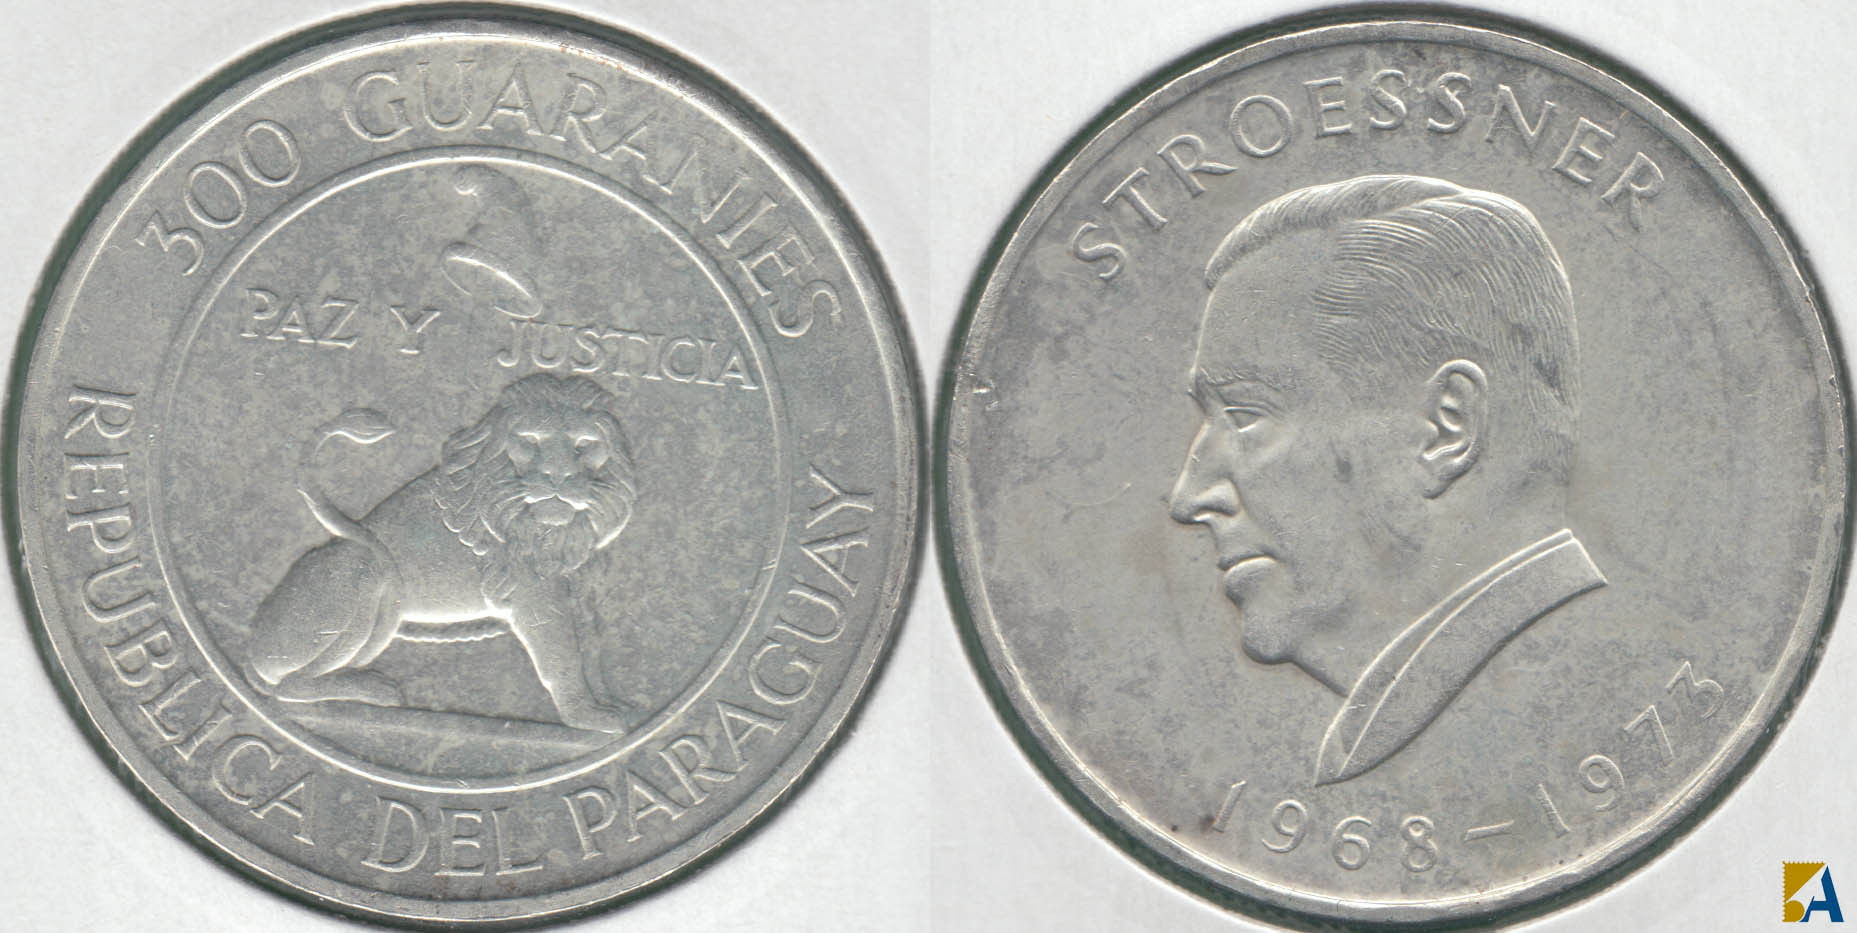 PARAGUAY. 300 GUARANIES DE 1968. PLATA 0.720. (3)